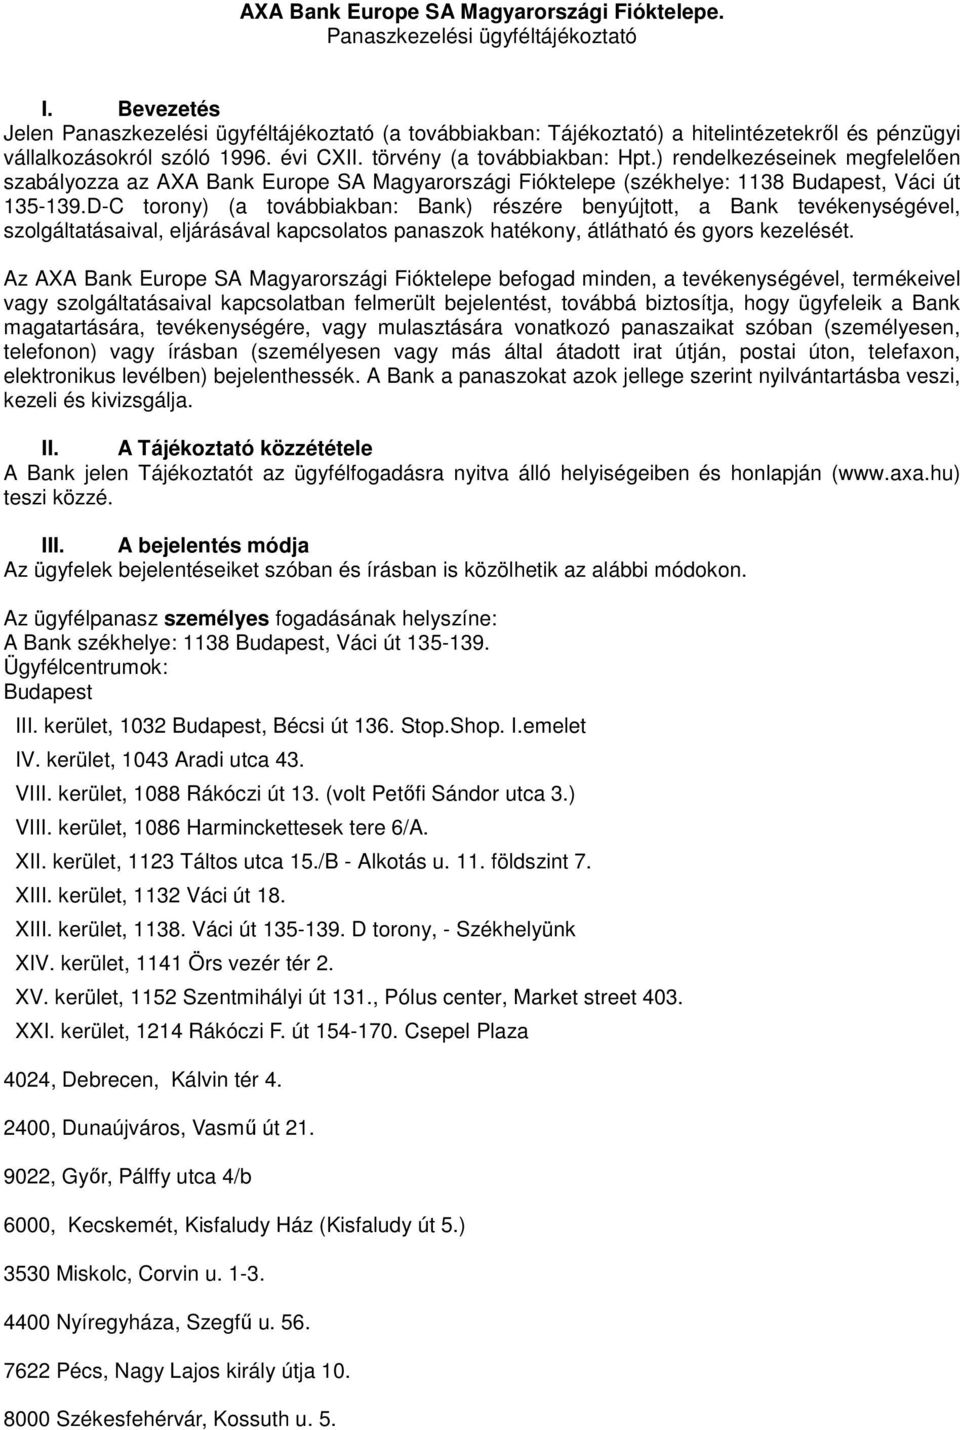 ) rendelkezéseinek megfelelıen szabályozza az AXA Bank Europe SA Magyarországi Fióktelepe (székhelye: 1138 Budapest, Váci út 135-139.